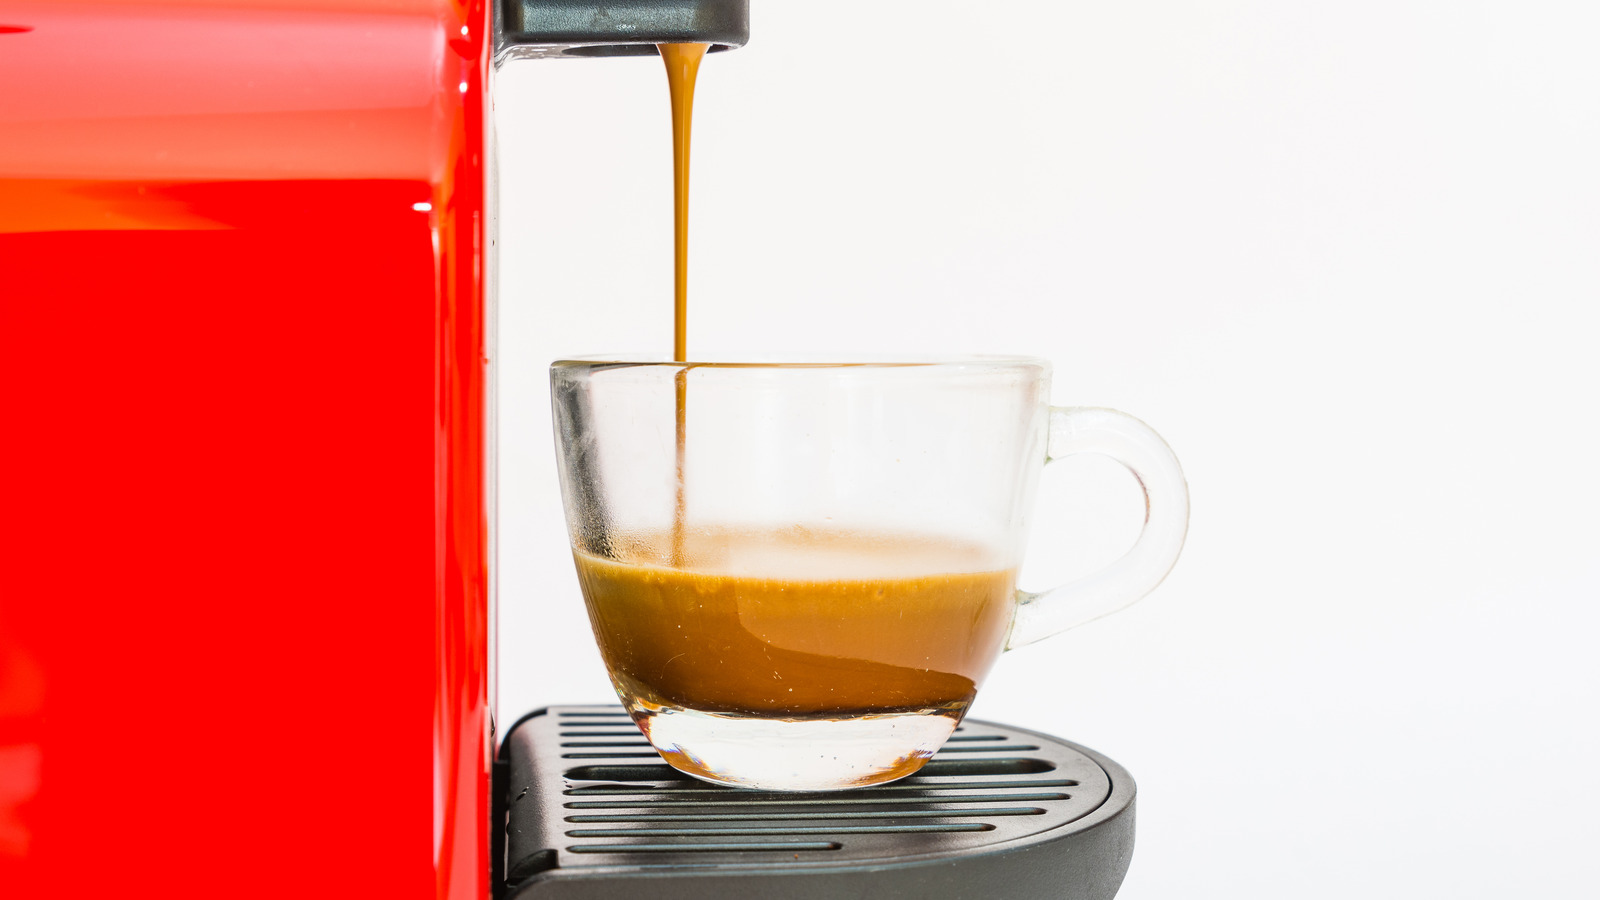 How to descale a Nespresso machine